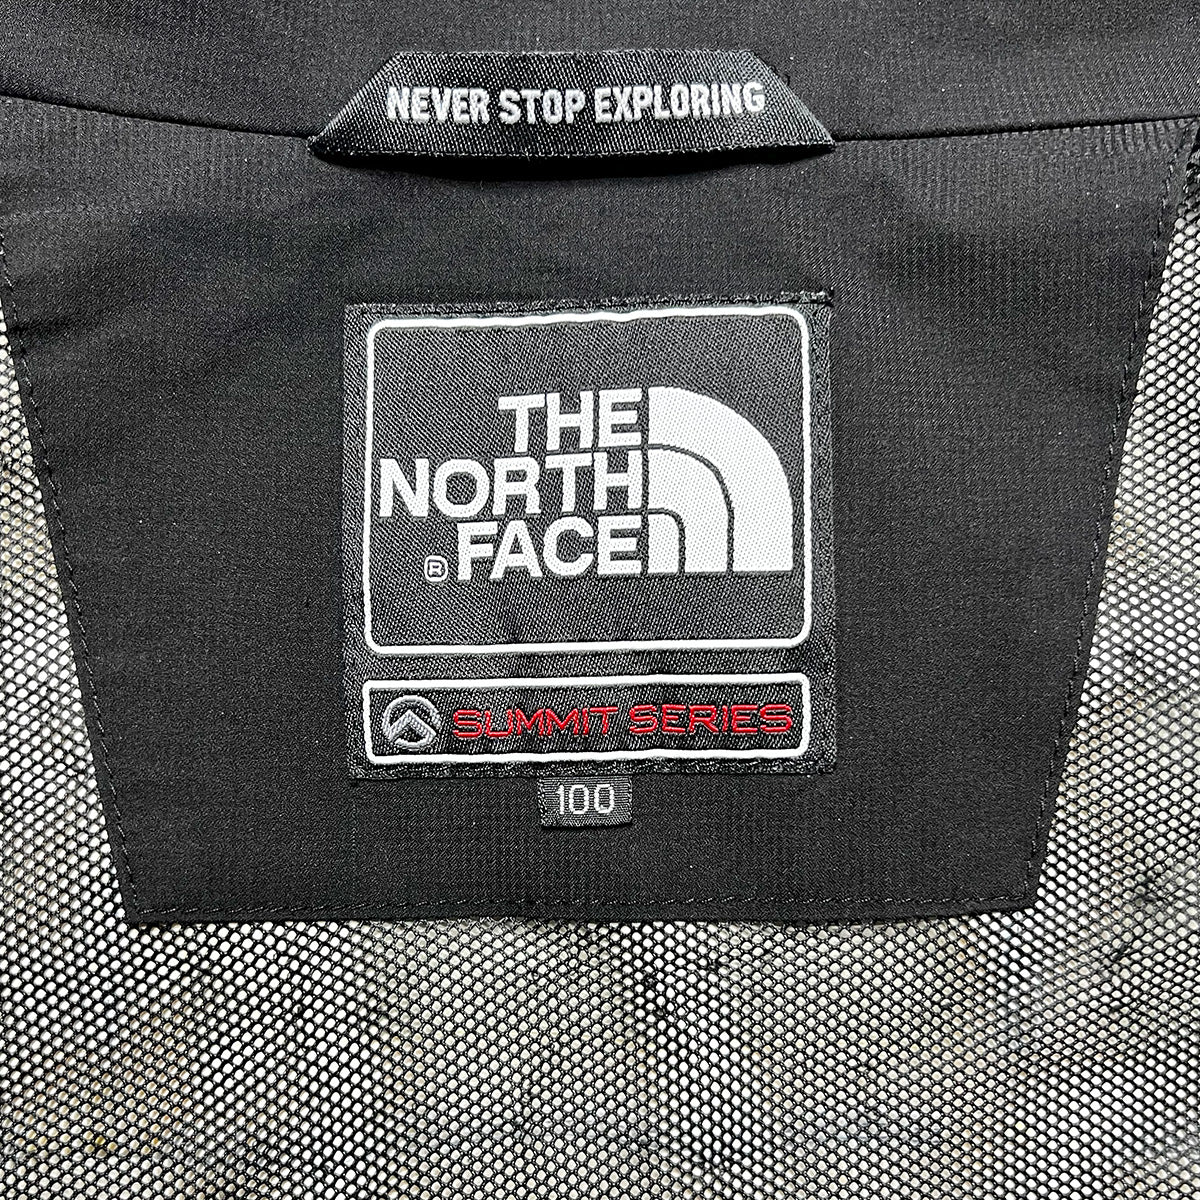 10076【THE NORTH FACE】ザノースフェイス メンズ サミットシリーズ GORE TEX ゴアテックス ジャケット ブラック 100/L